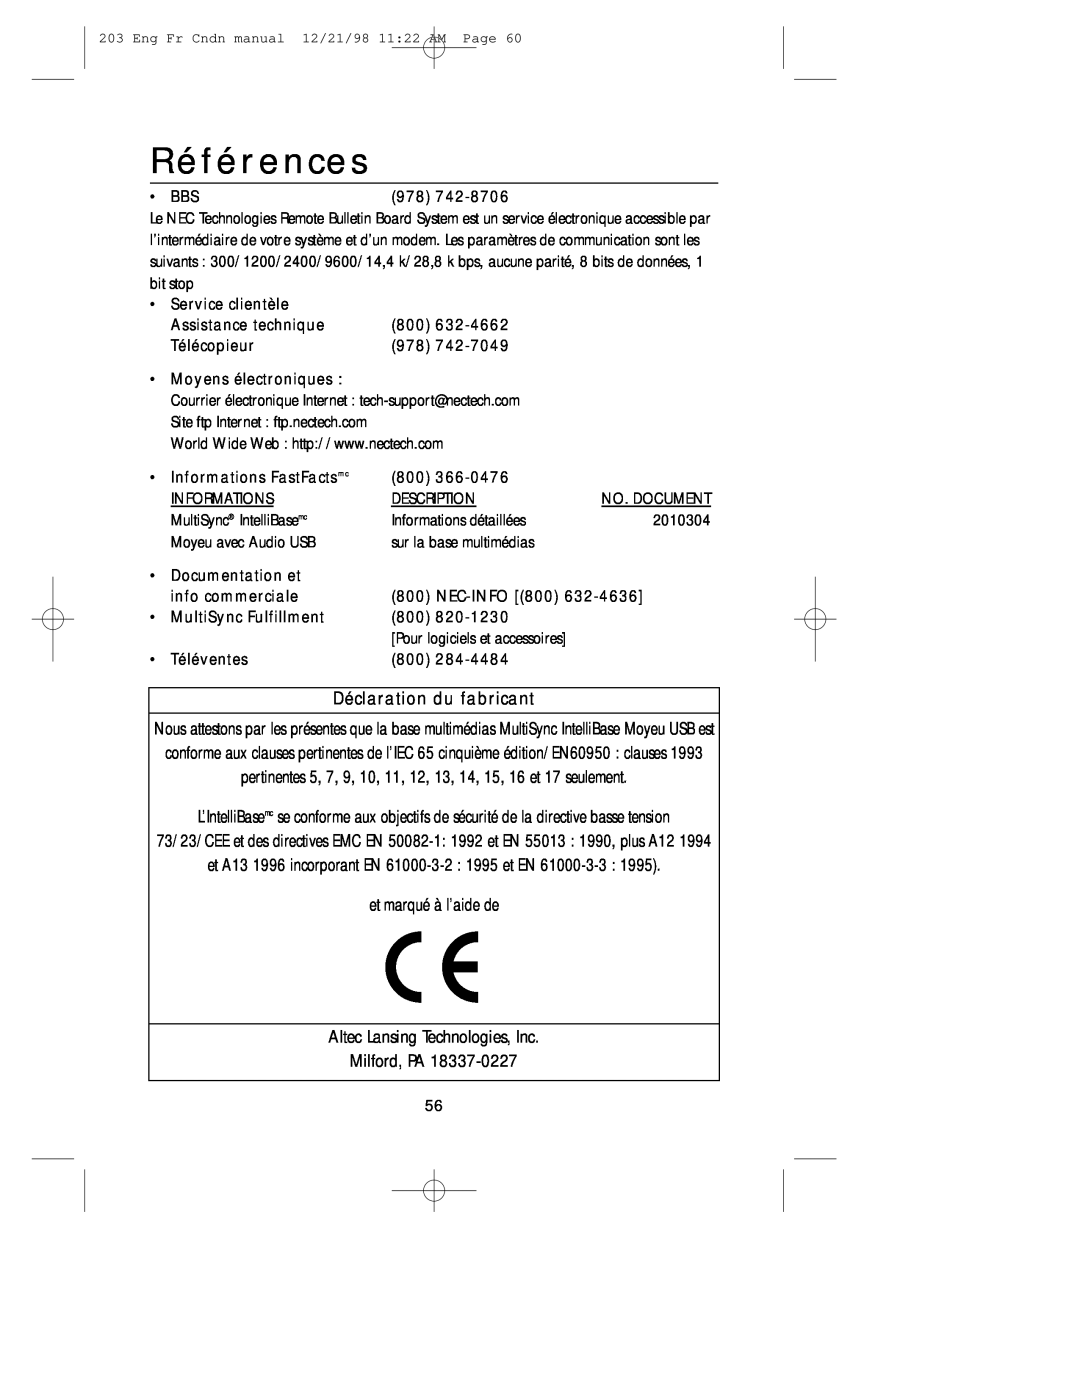 NEC USB user manual Références, Déclaration du fabricant 